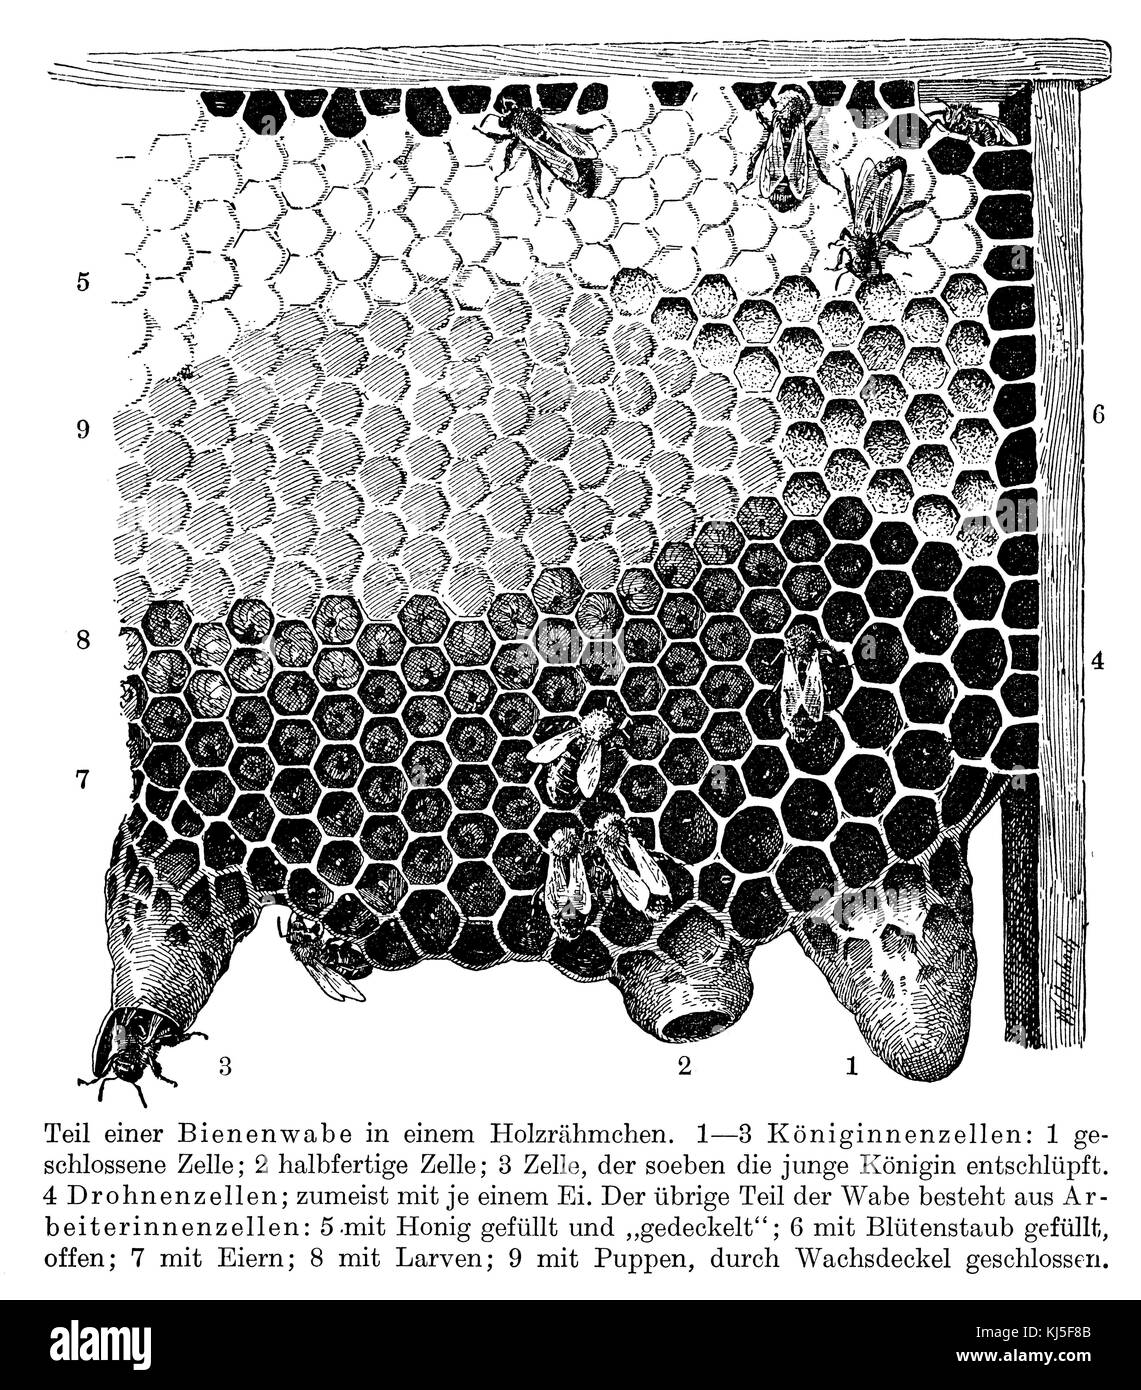 Honeybee: Honeycomb (Honigbiene: Bienenwabe) Stock Photo